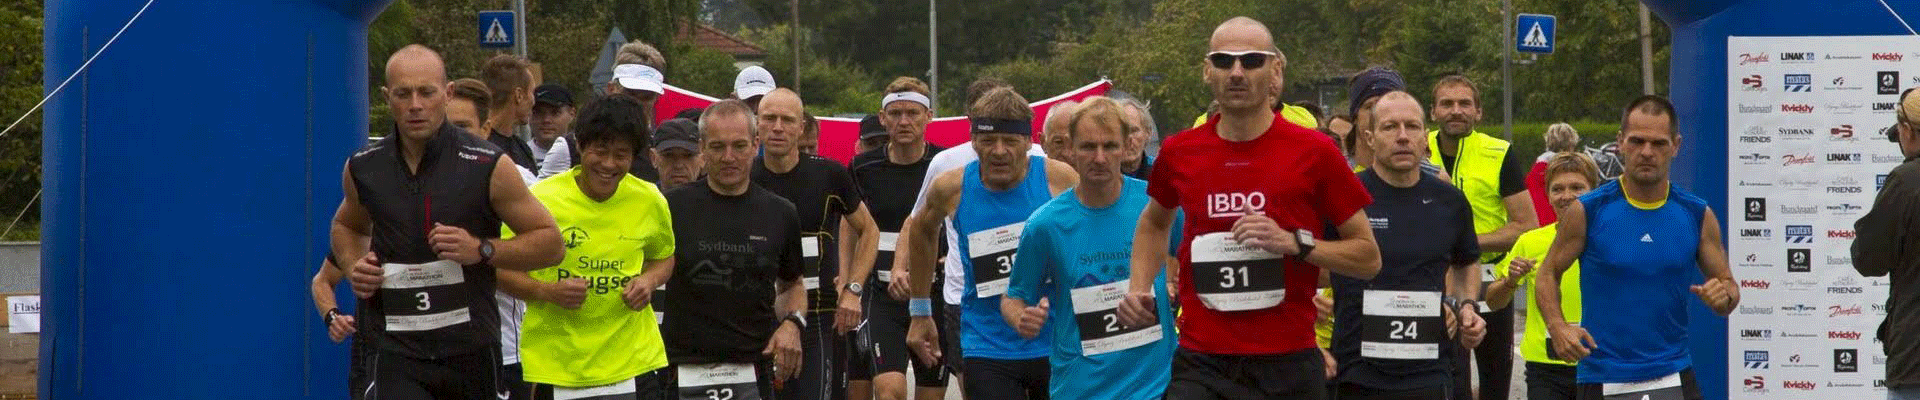 Nordborg Marathon 2017